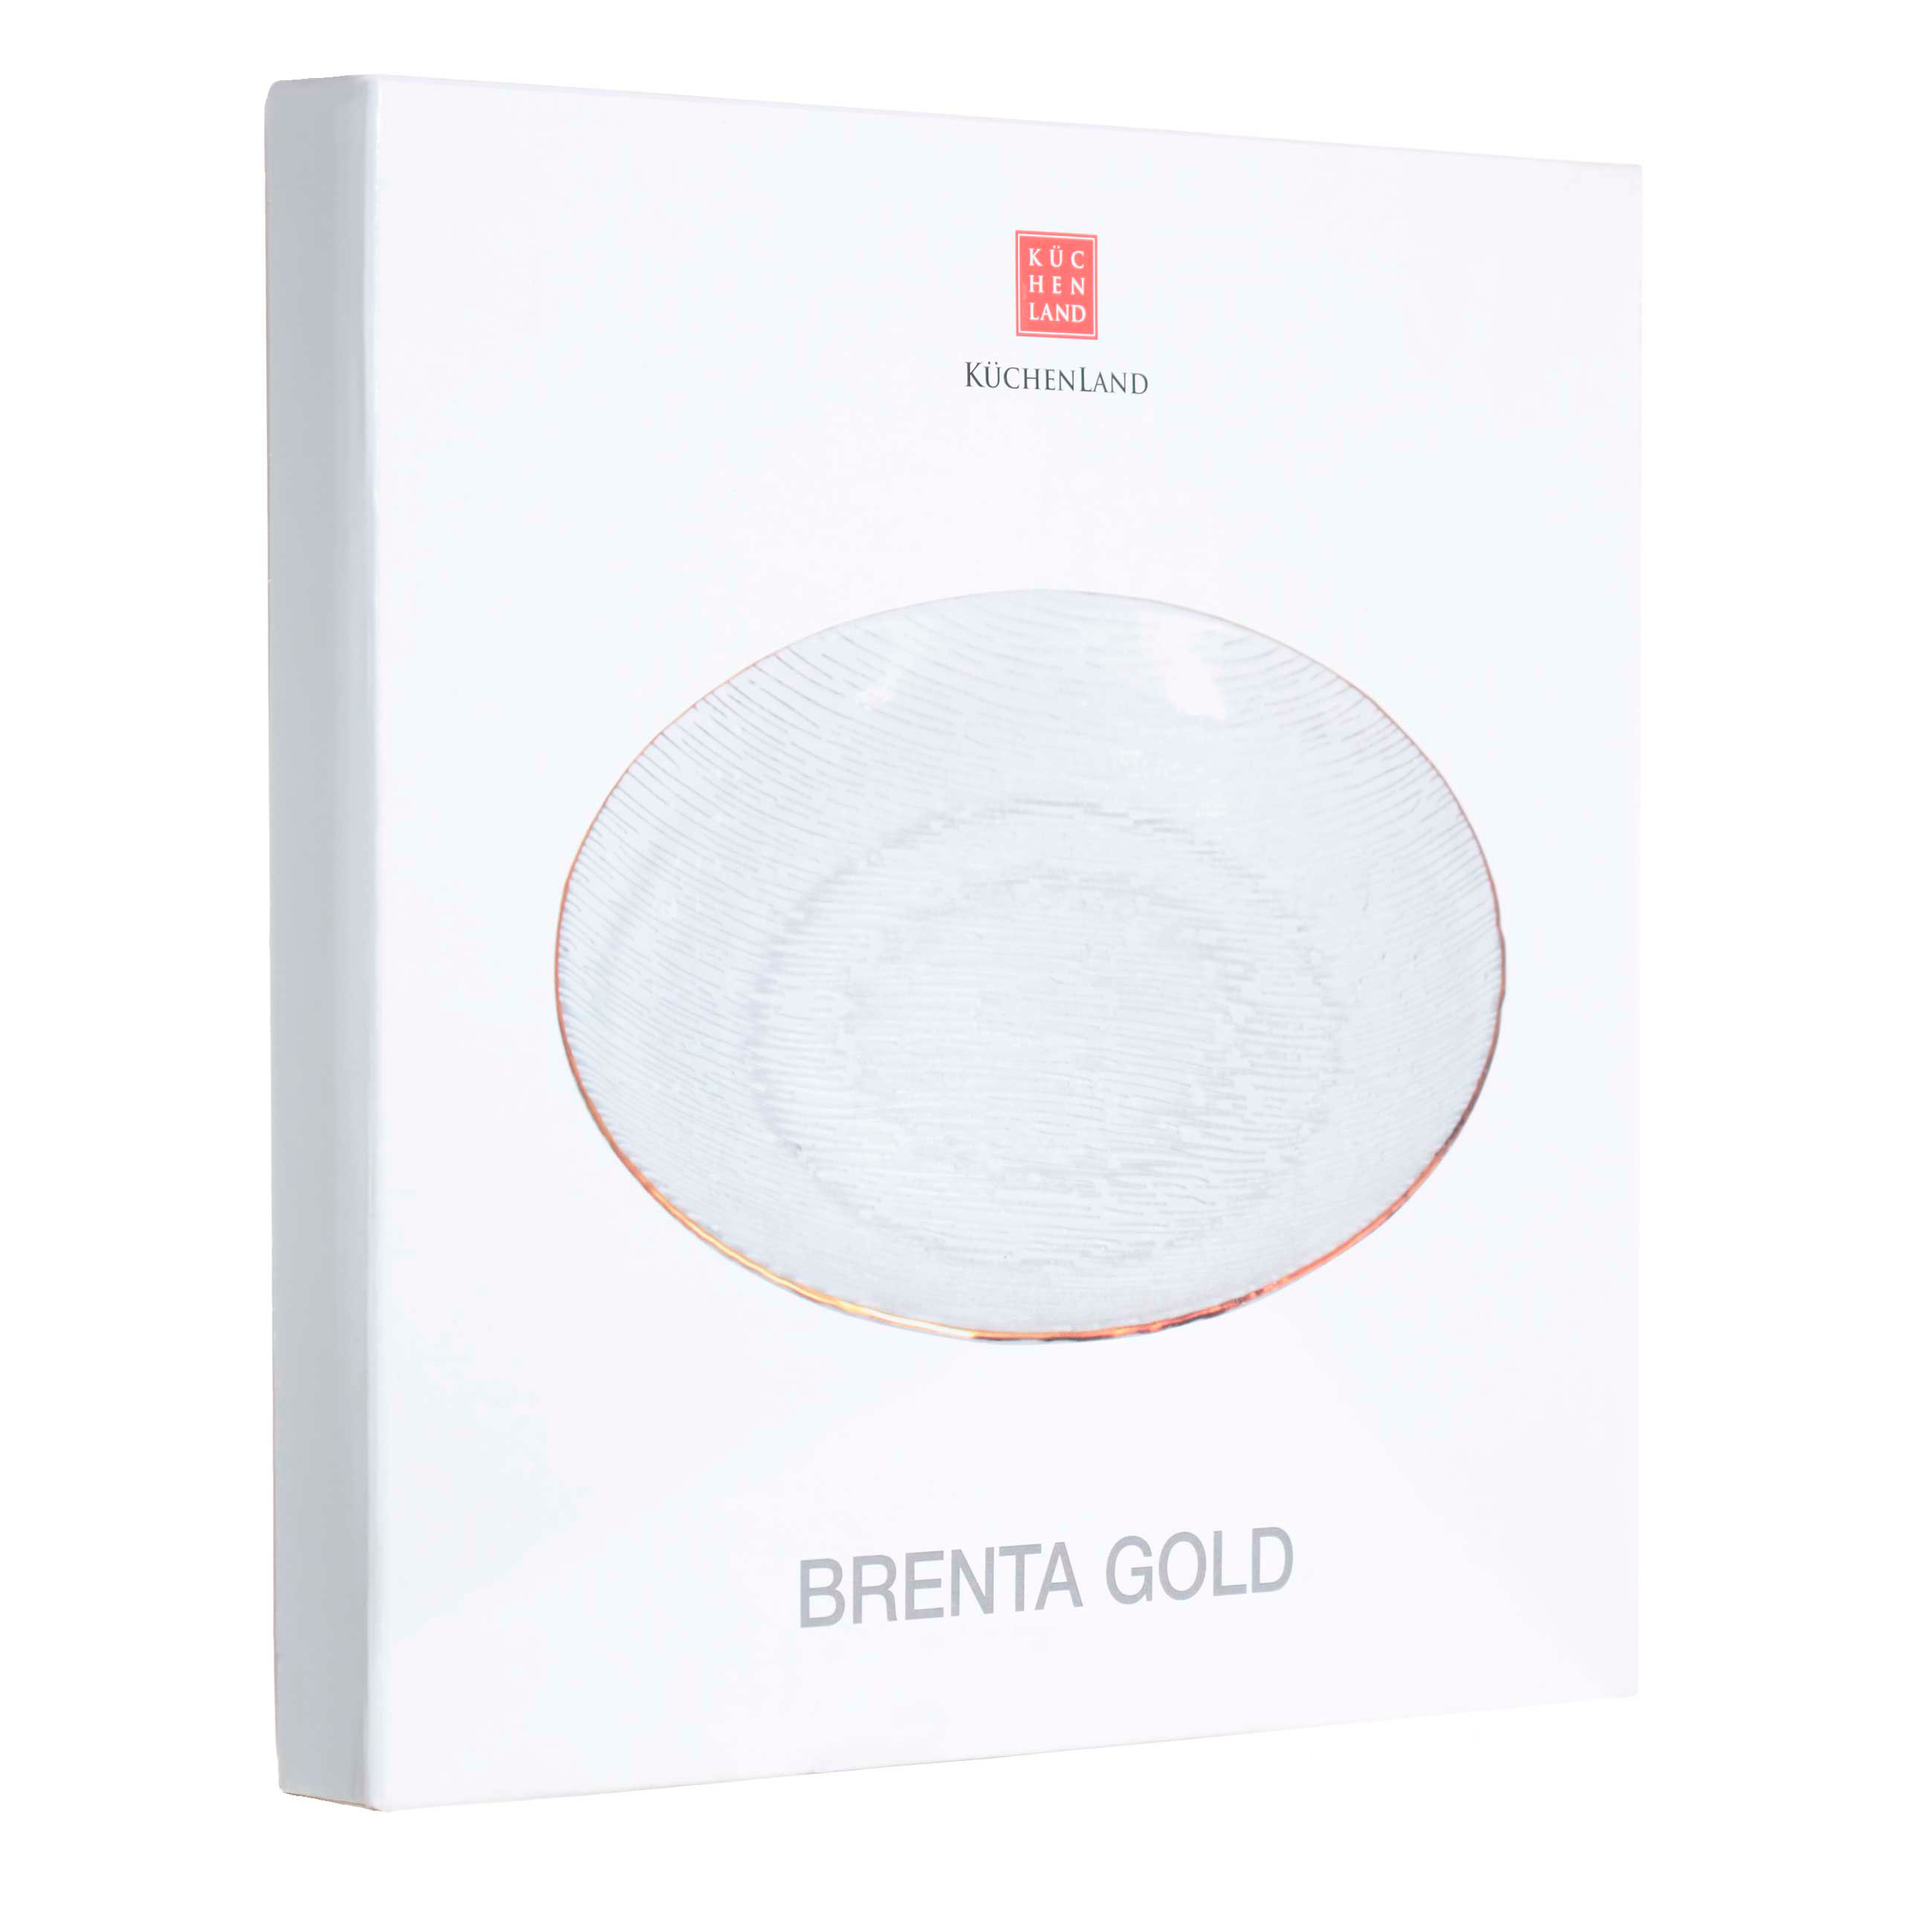 Тарелка закусочная, 21 см, стекло, с золотистым кантом, Brenta gold изображение № 3